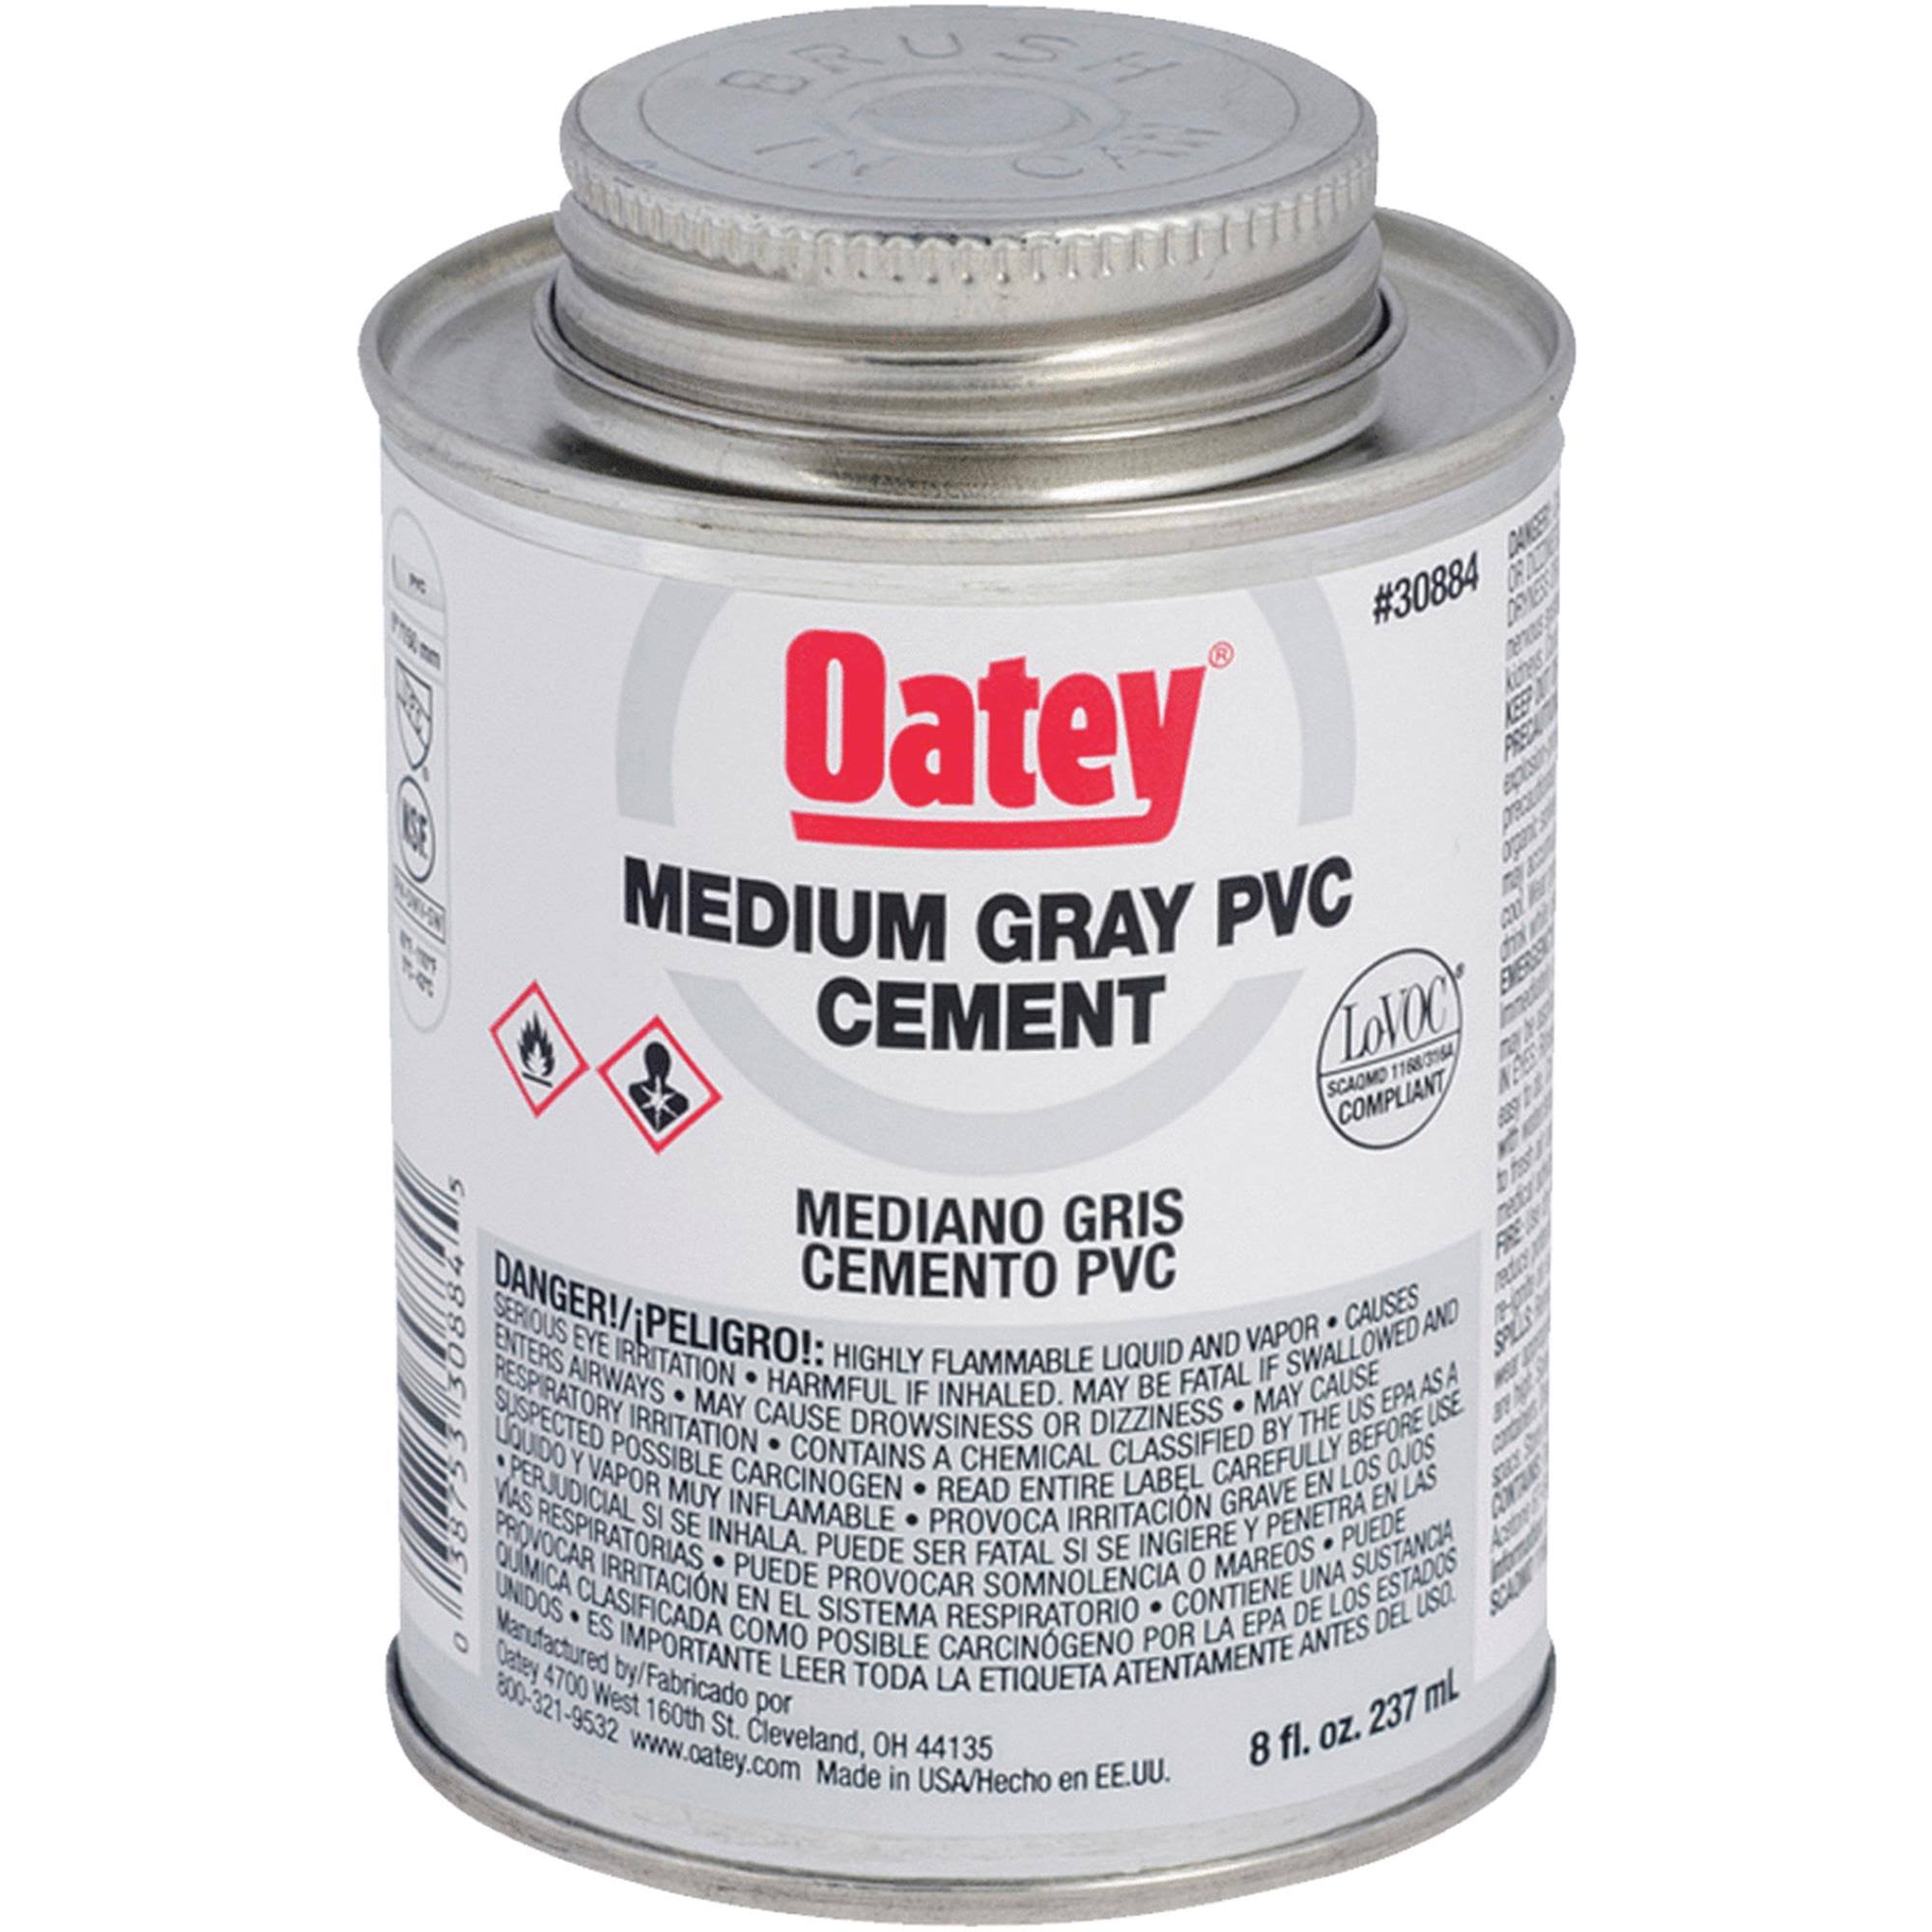 Oatey Medium Gray Pvc Cement - 8oz